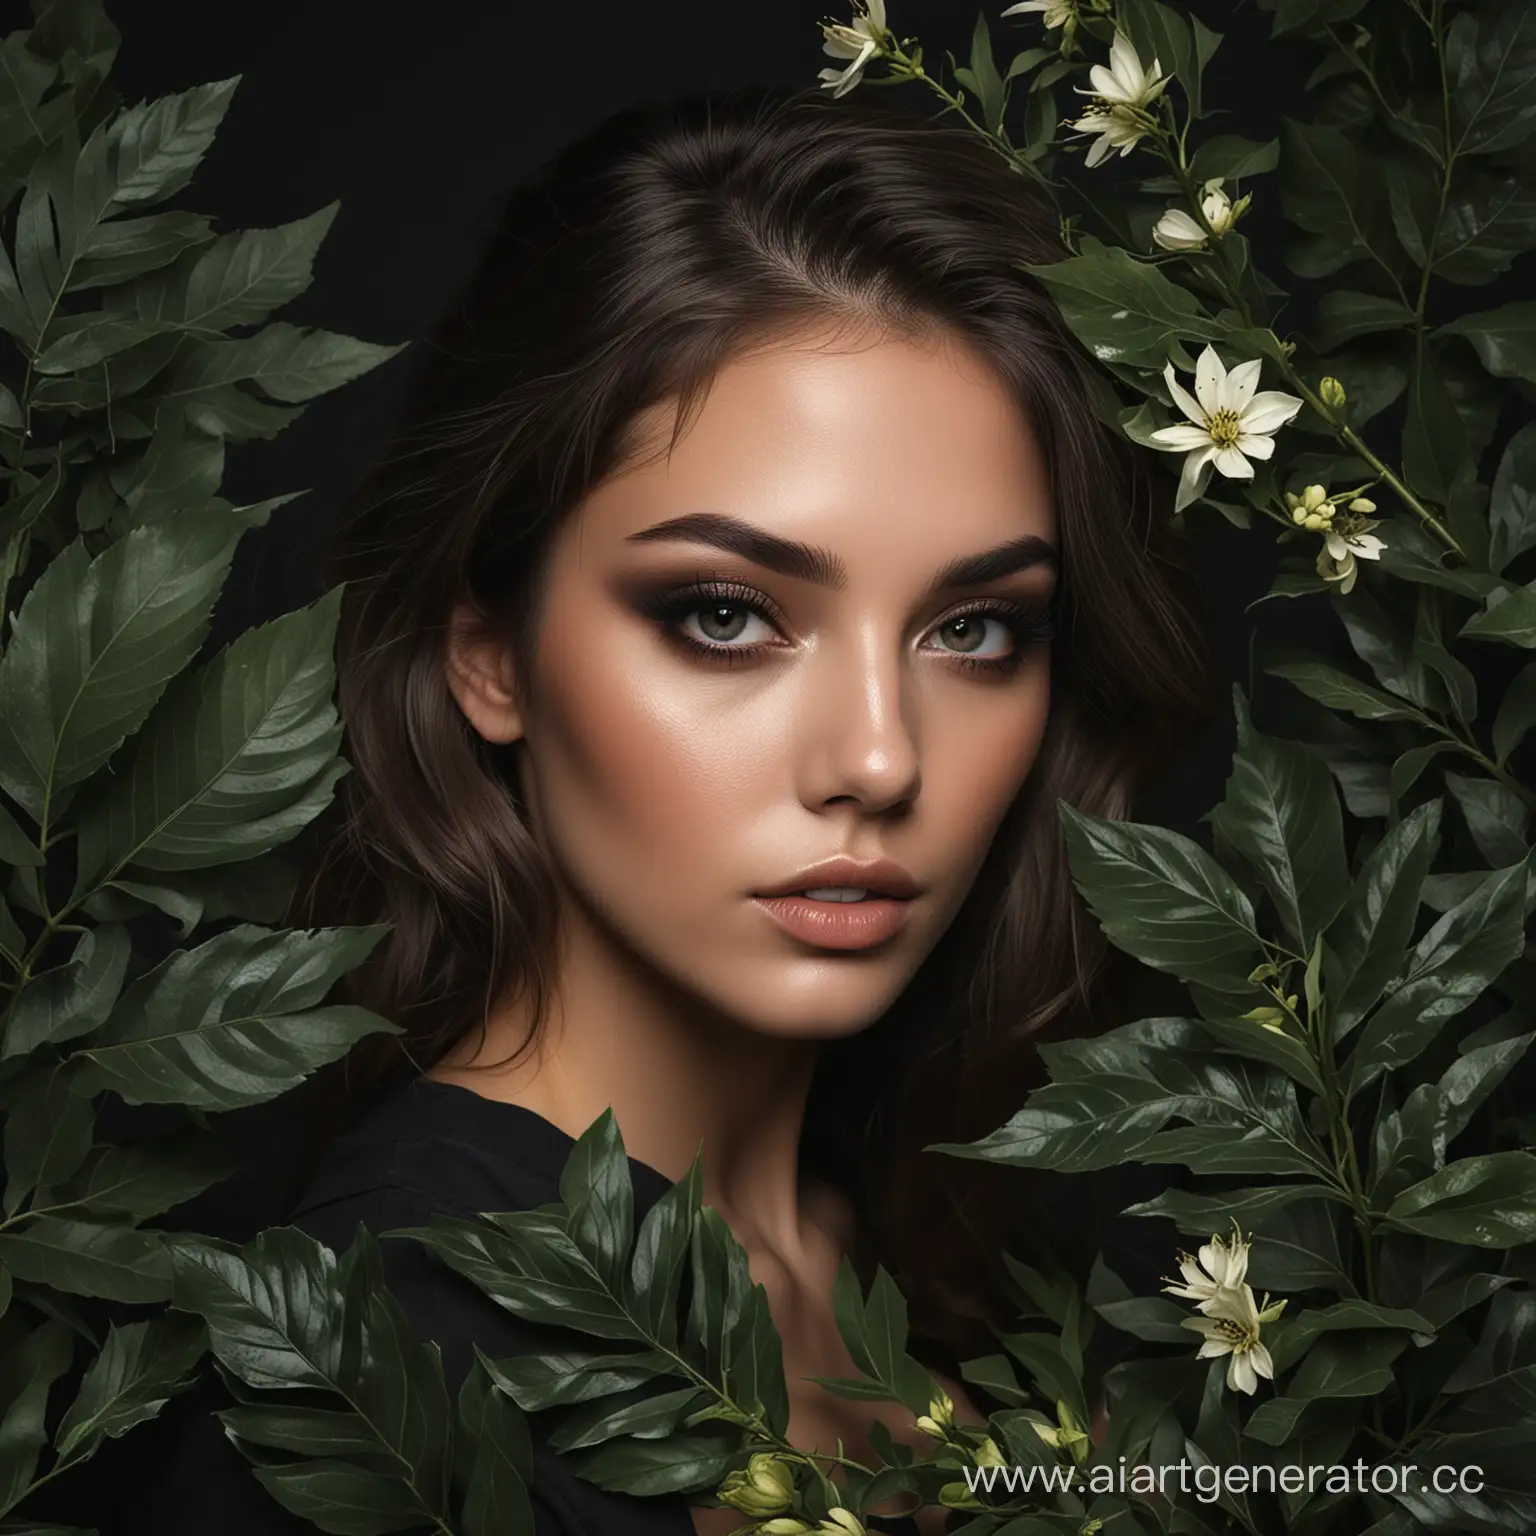 фото девушки, для косметологии, в цветах или листьях, эстетичное фото, с темным фоном, smoky eyes